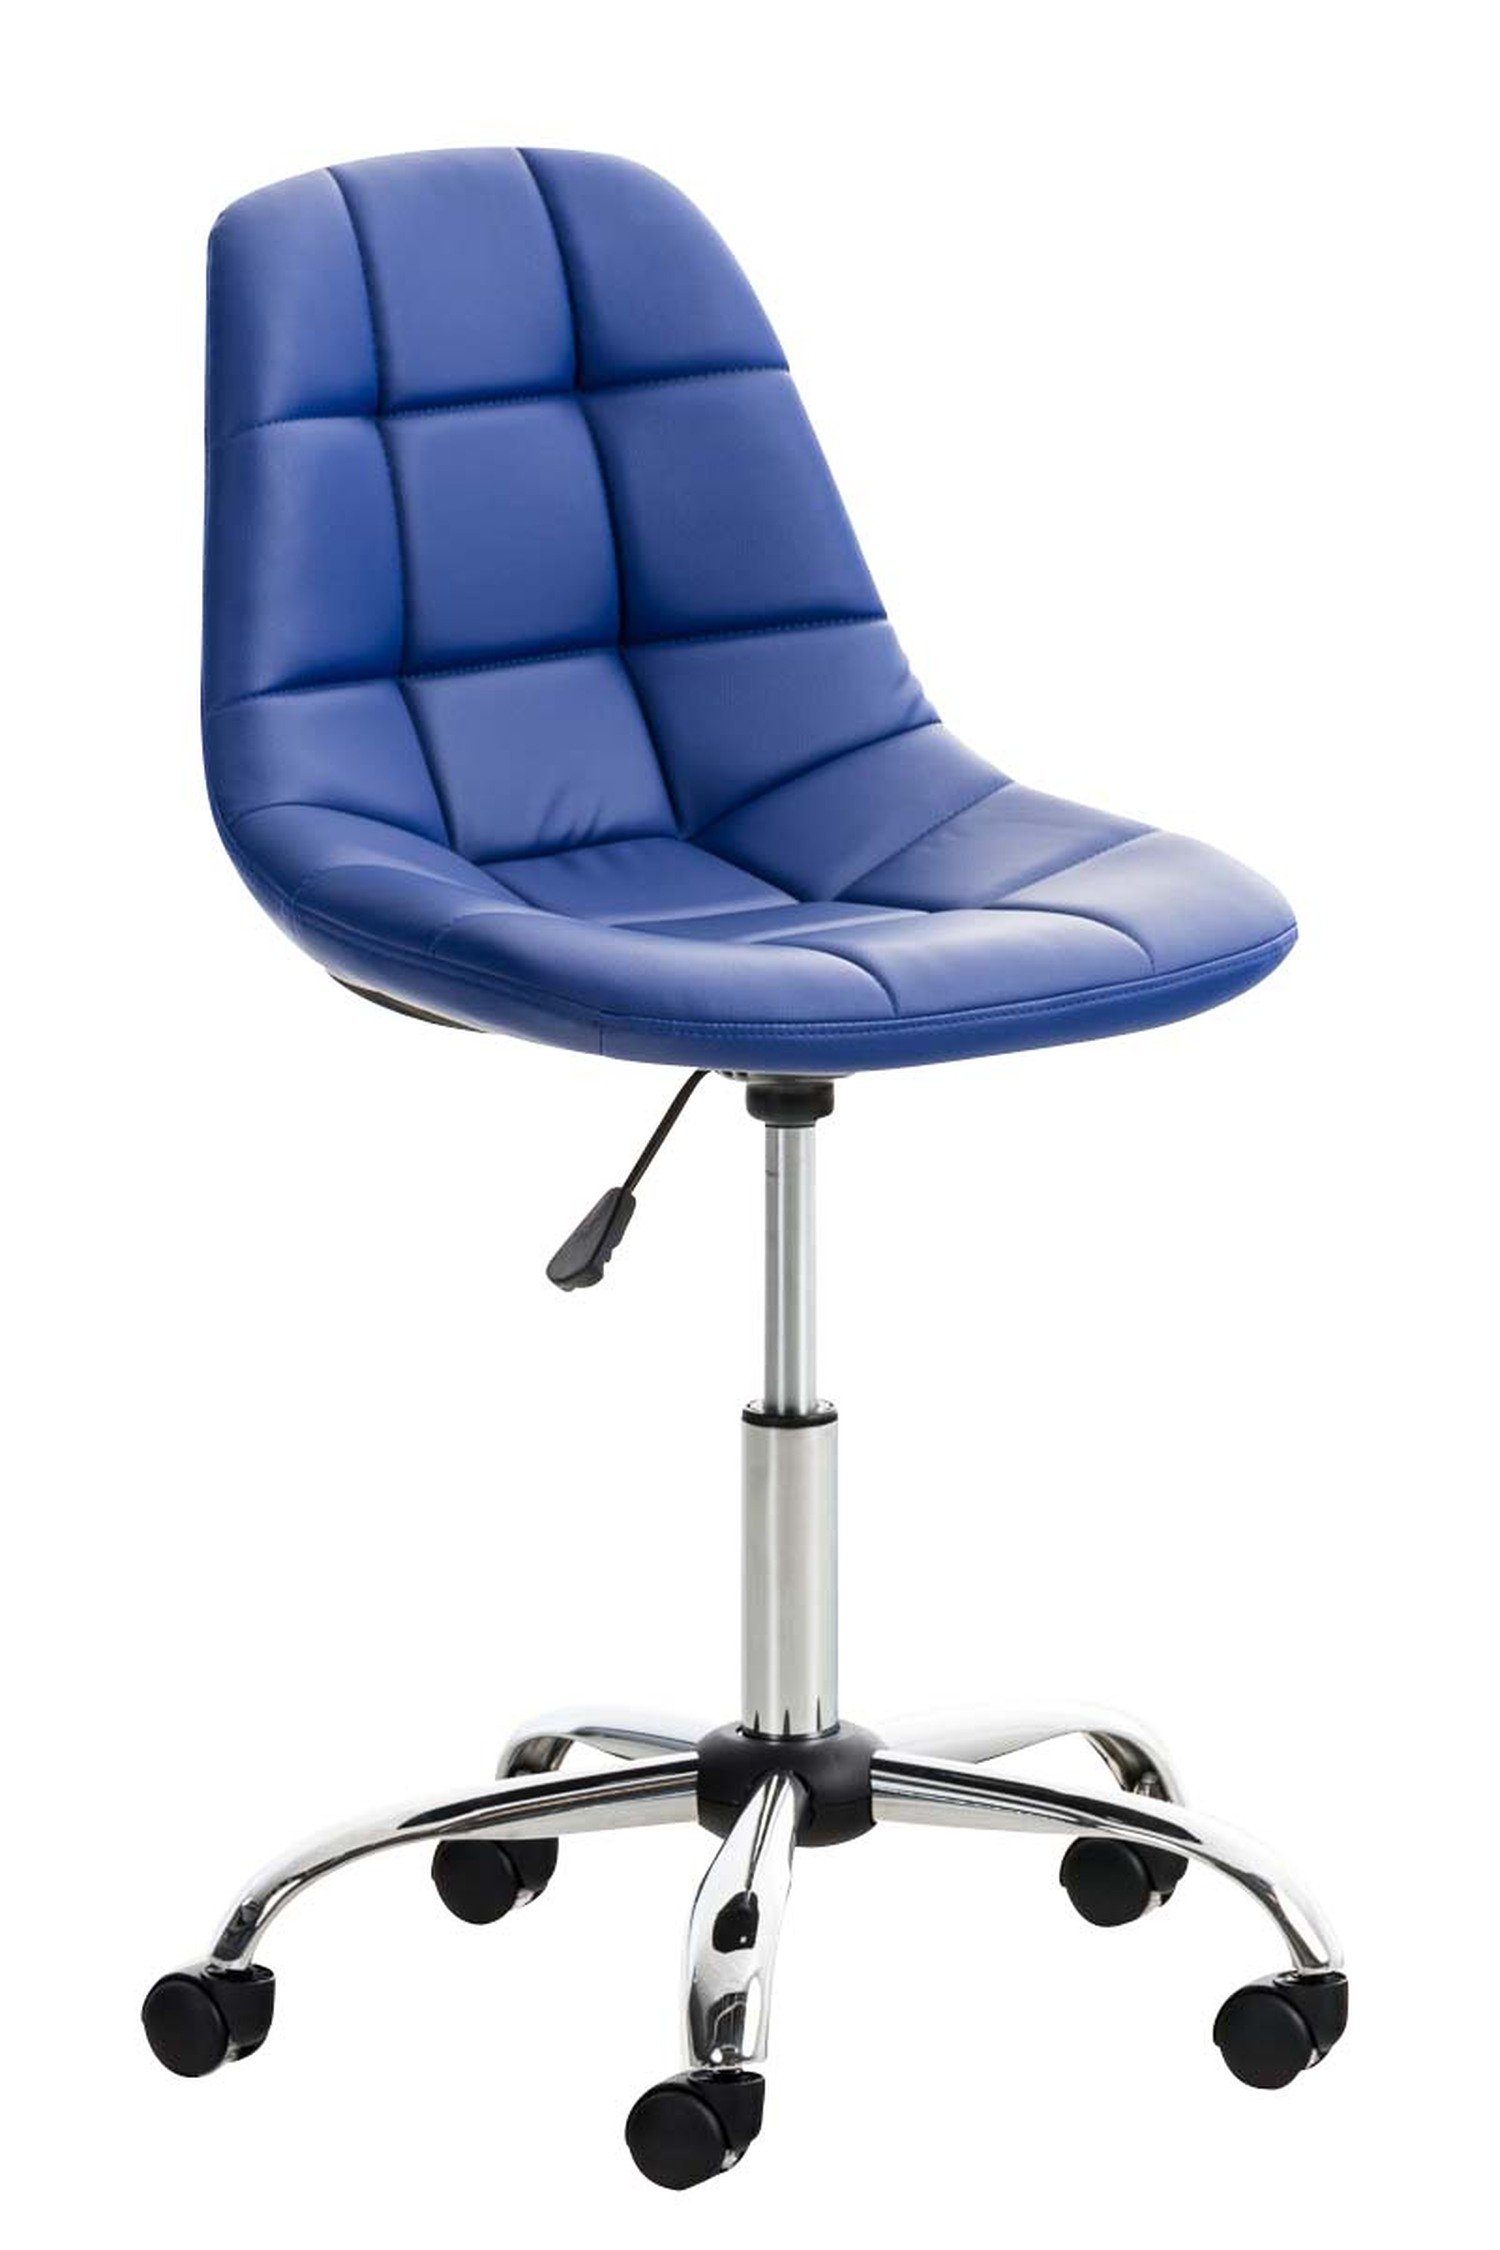 TPFLiving Bürostuhl Emily mit bequemer Rückenlehne - höhenverstellbar und 360° drehbar (Schreibtischstuhl, Drehstuhl, Chefsessel, Konferenzstuhl), Gestell: Metall chrom - Sitzfläche: Kunstleder blau | Drehstühle